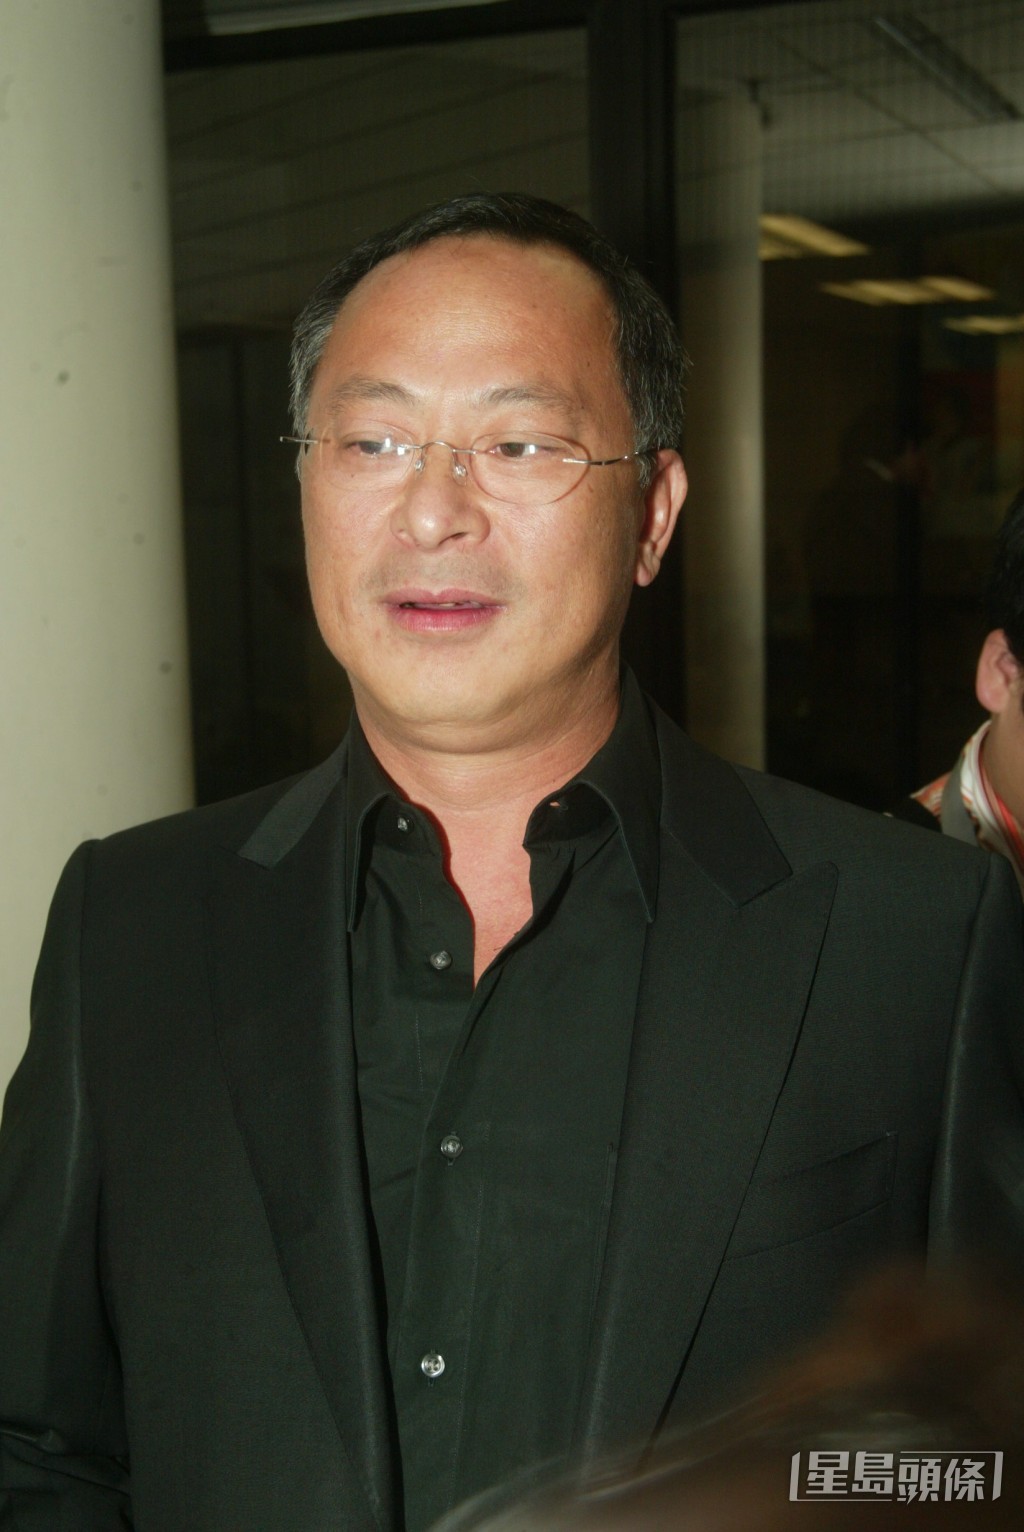 68歲的杜琪峯是香港電影殿堂級導演之一。